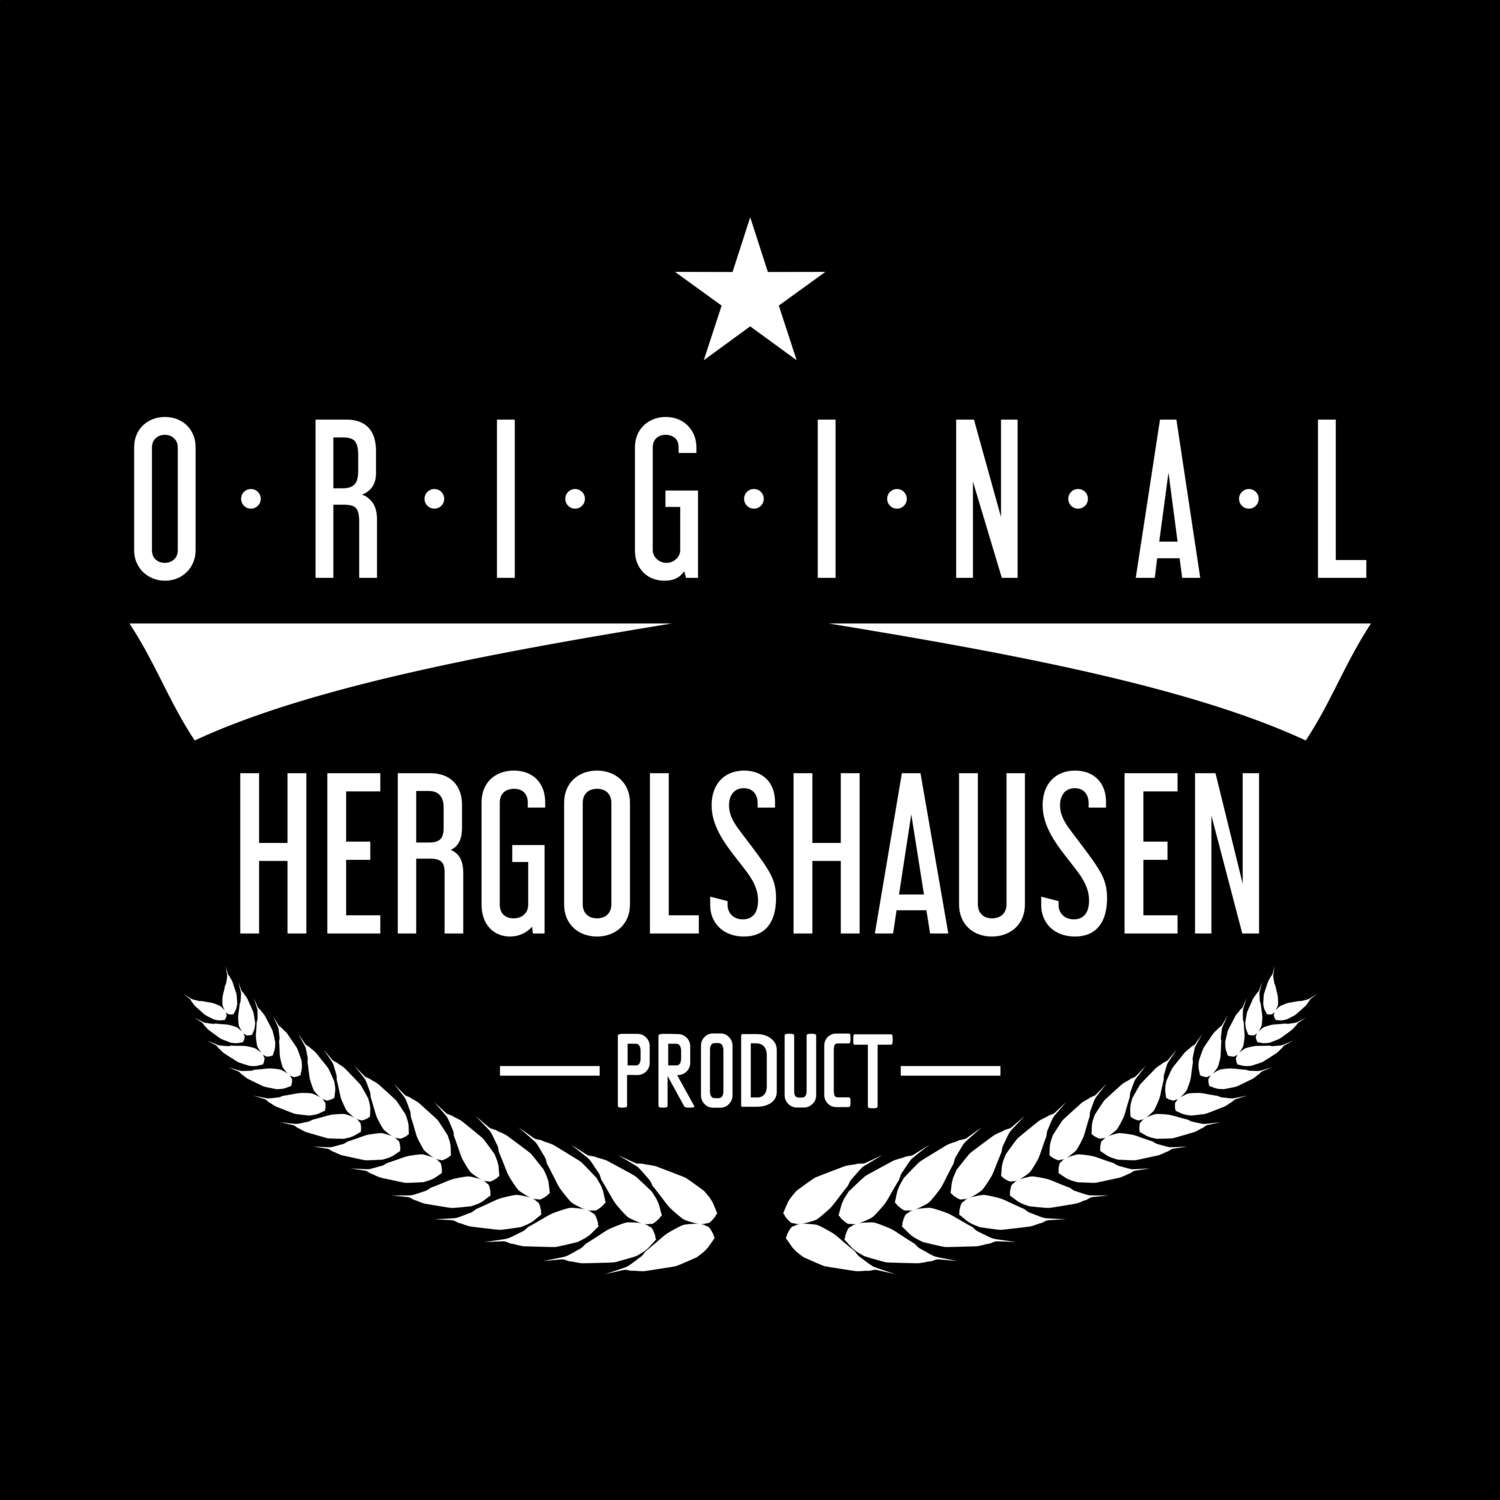 Hergolshausen T-Shirt »Original Product«